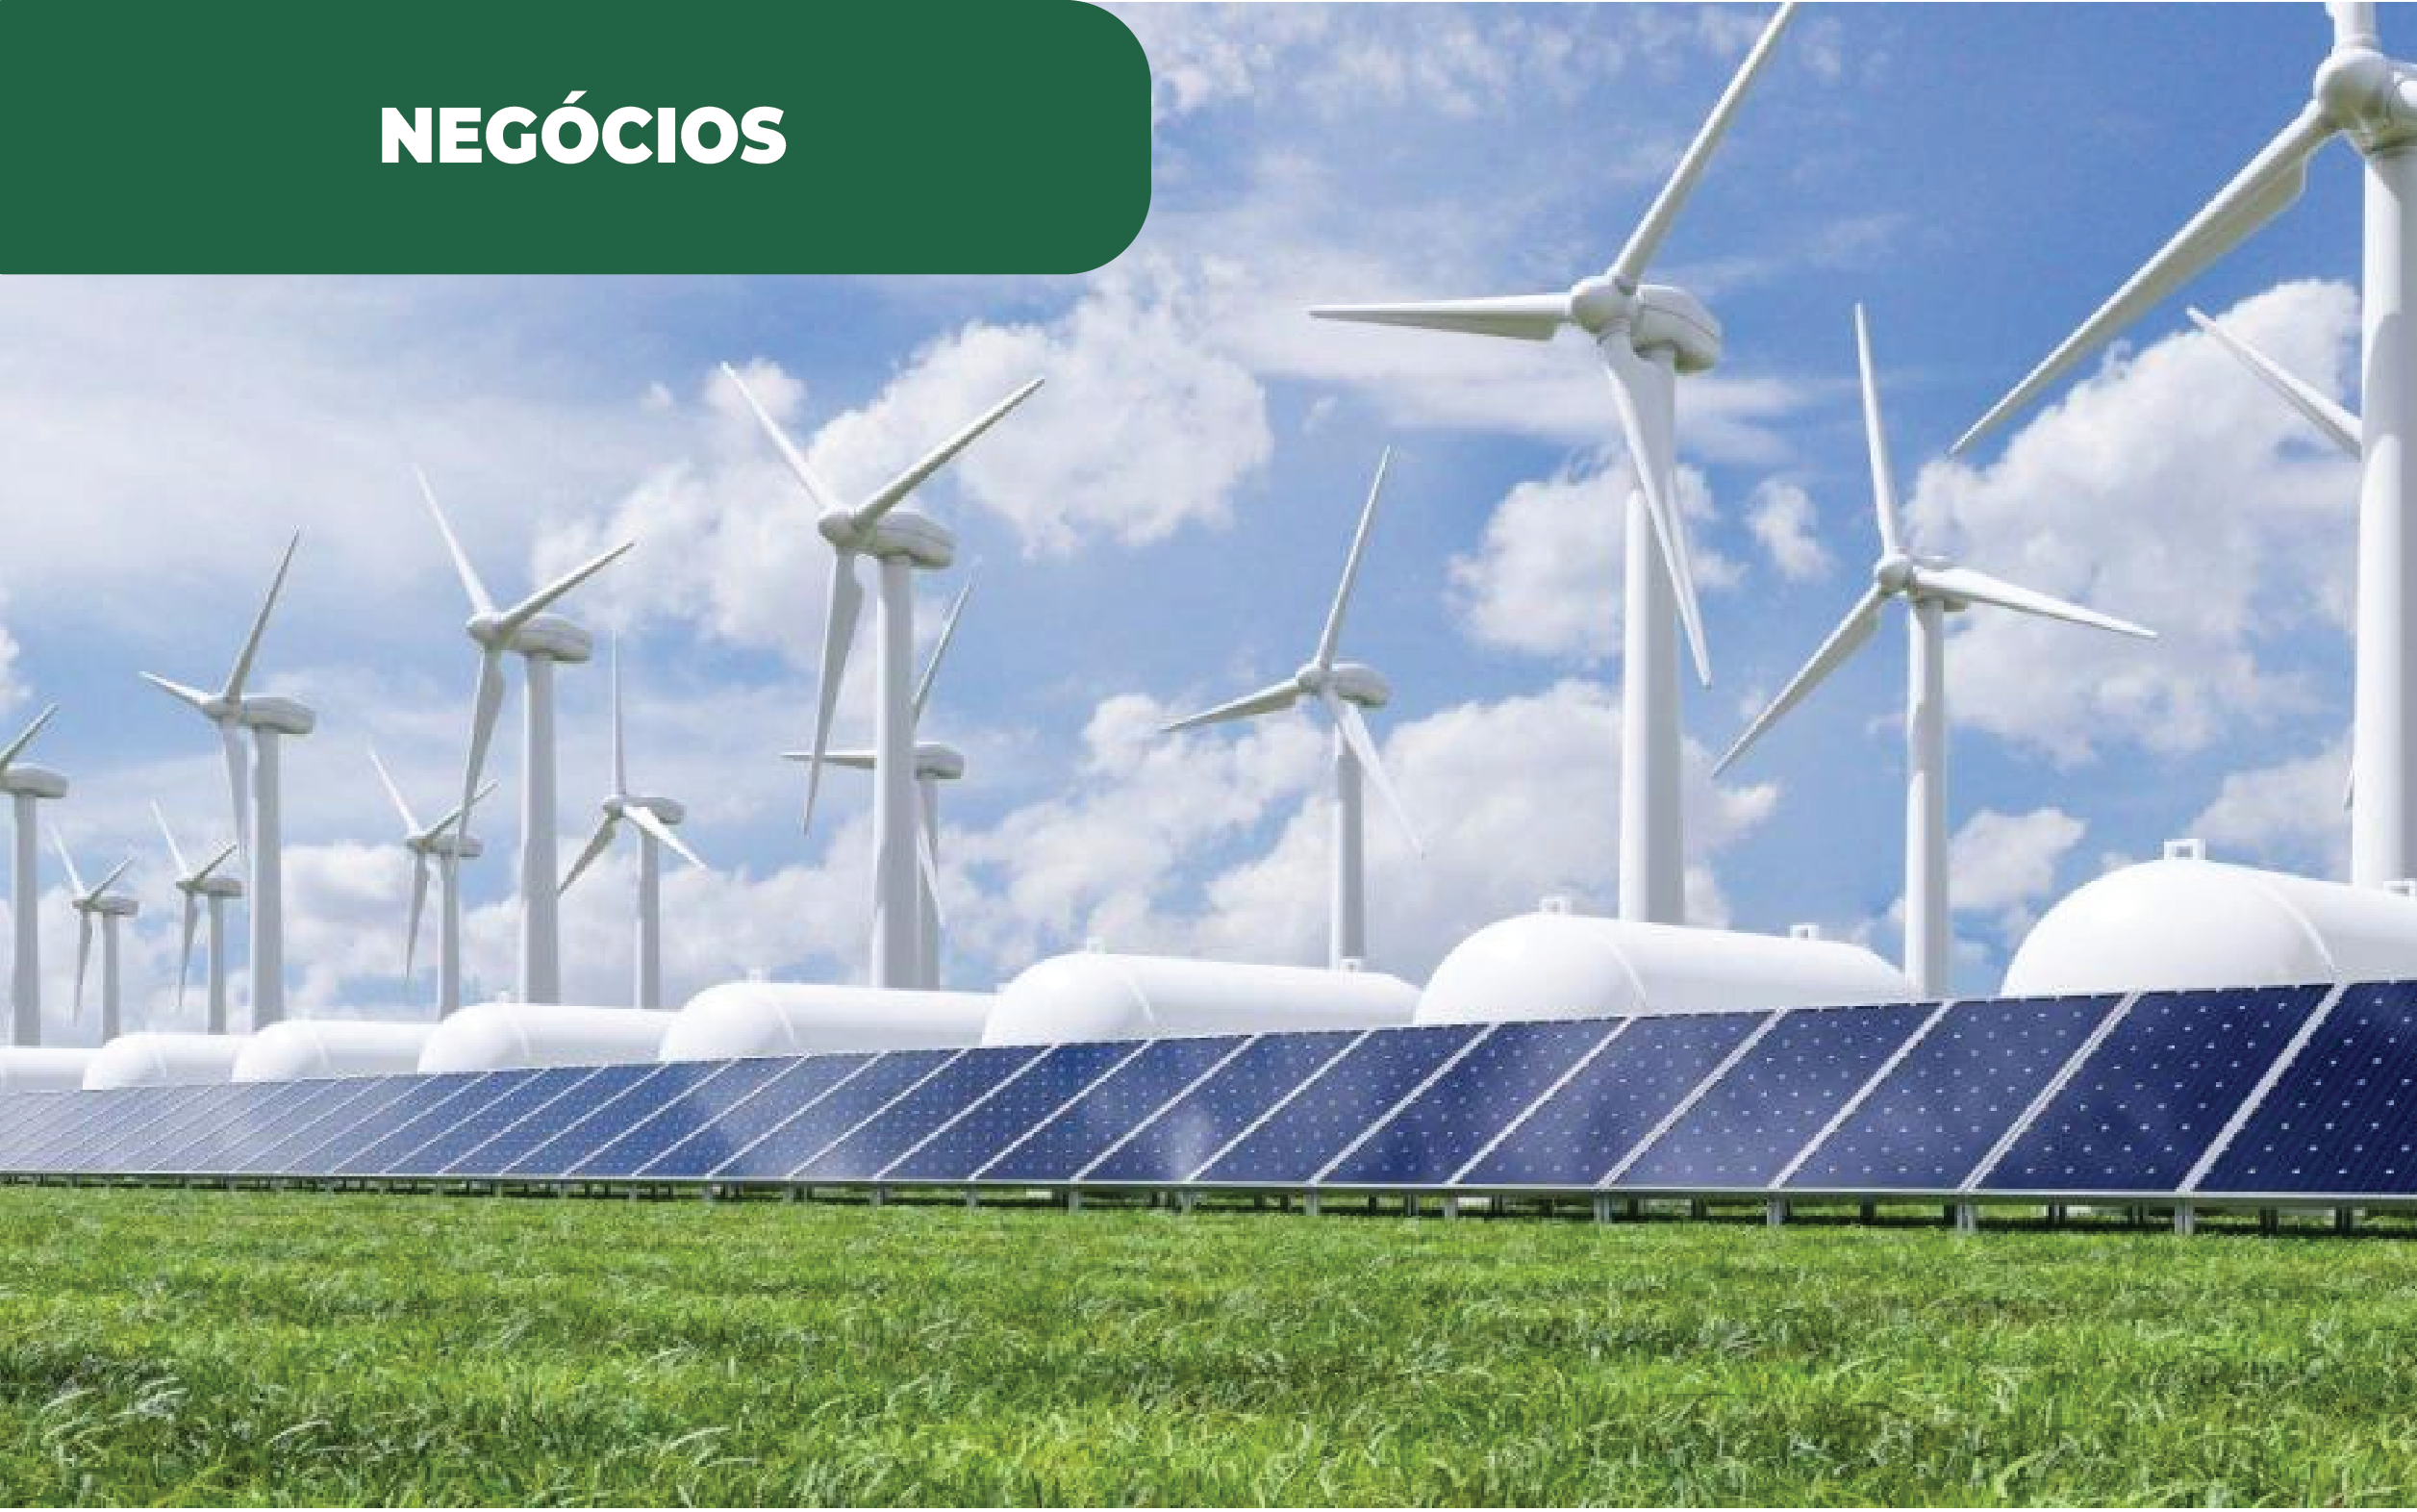 Imagem colorida apresentando um parque eólico e fotovoltaico, com painéis solares - uma das origem da produção de hidrogénio verde em Portugal